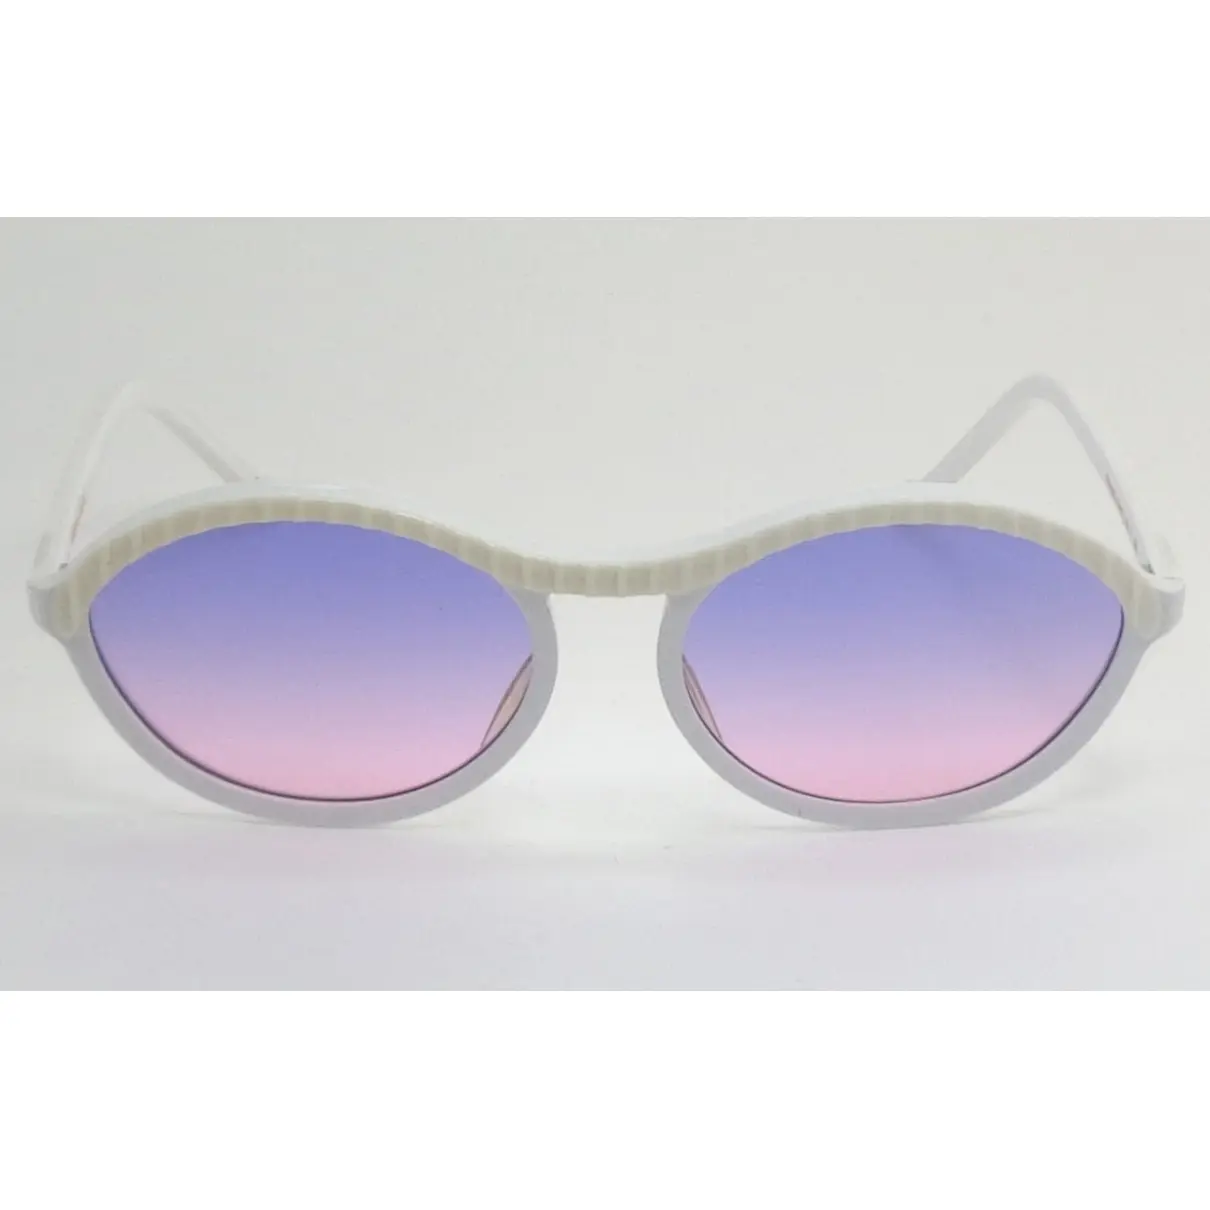 Sunglasses Fendi - Vintage